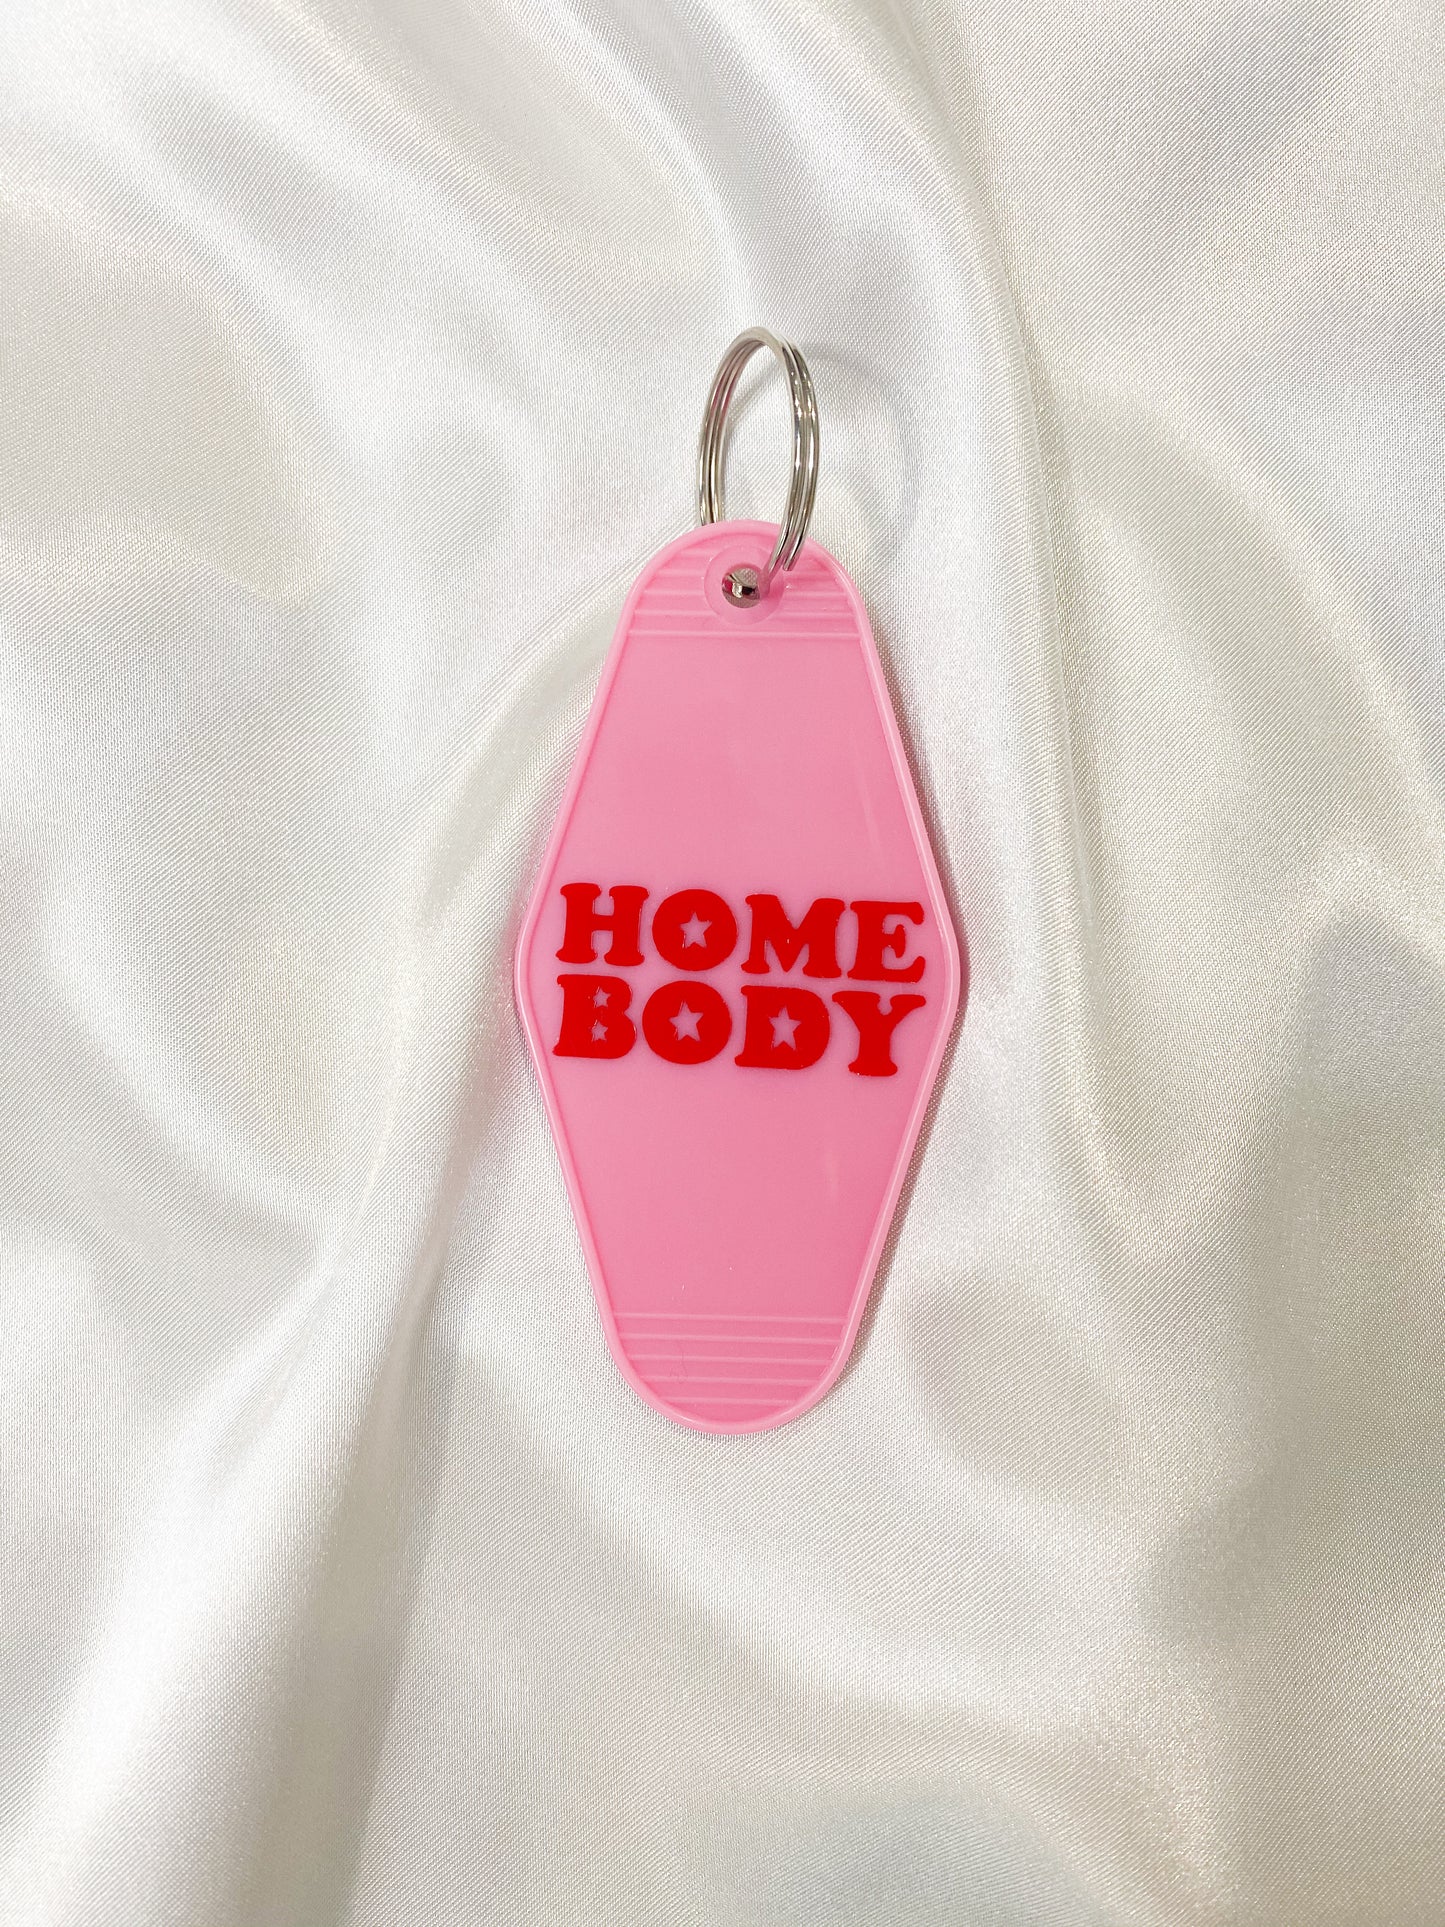 Home Body Keychain